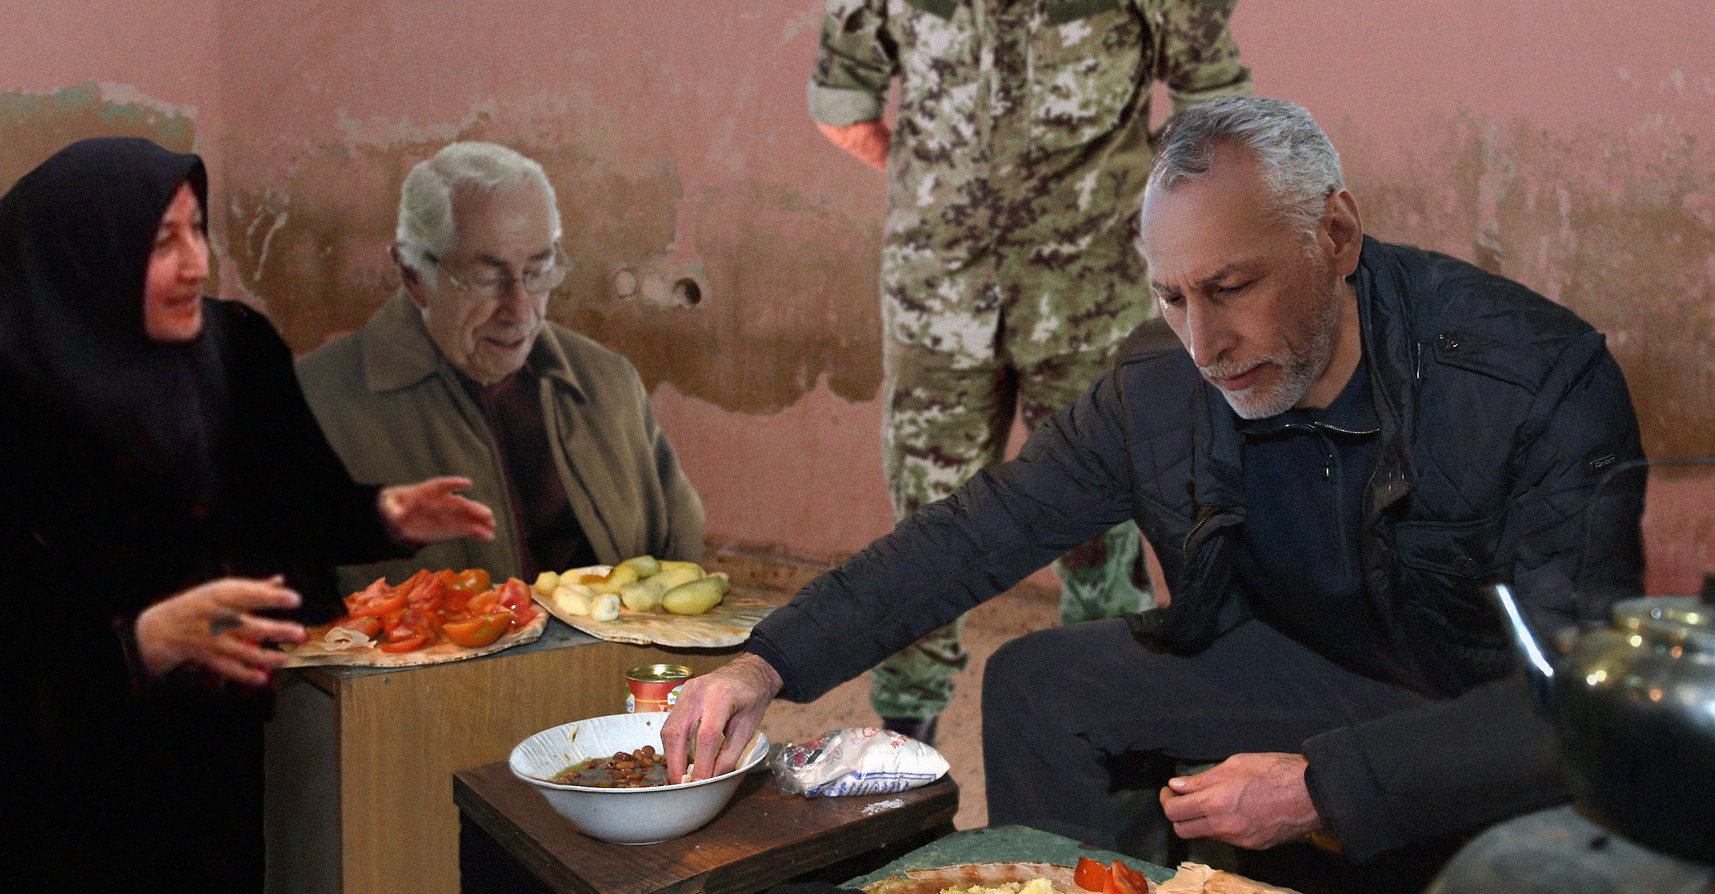 صورة الزعيم المتواضع يقبل مشاركة مواطنٍ فقيرٍ طعامه